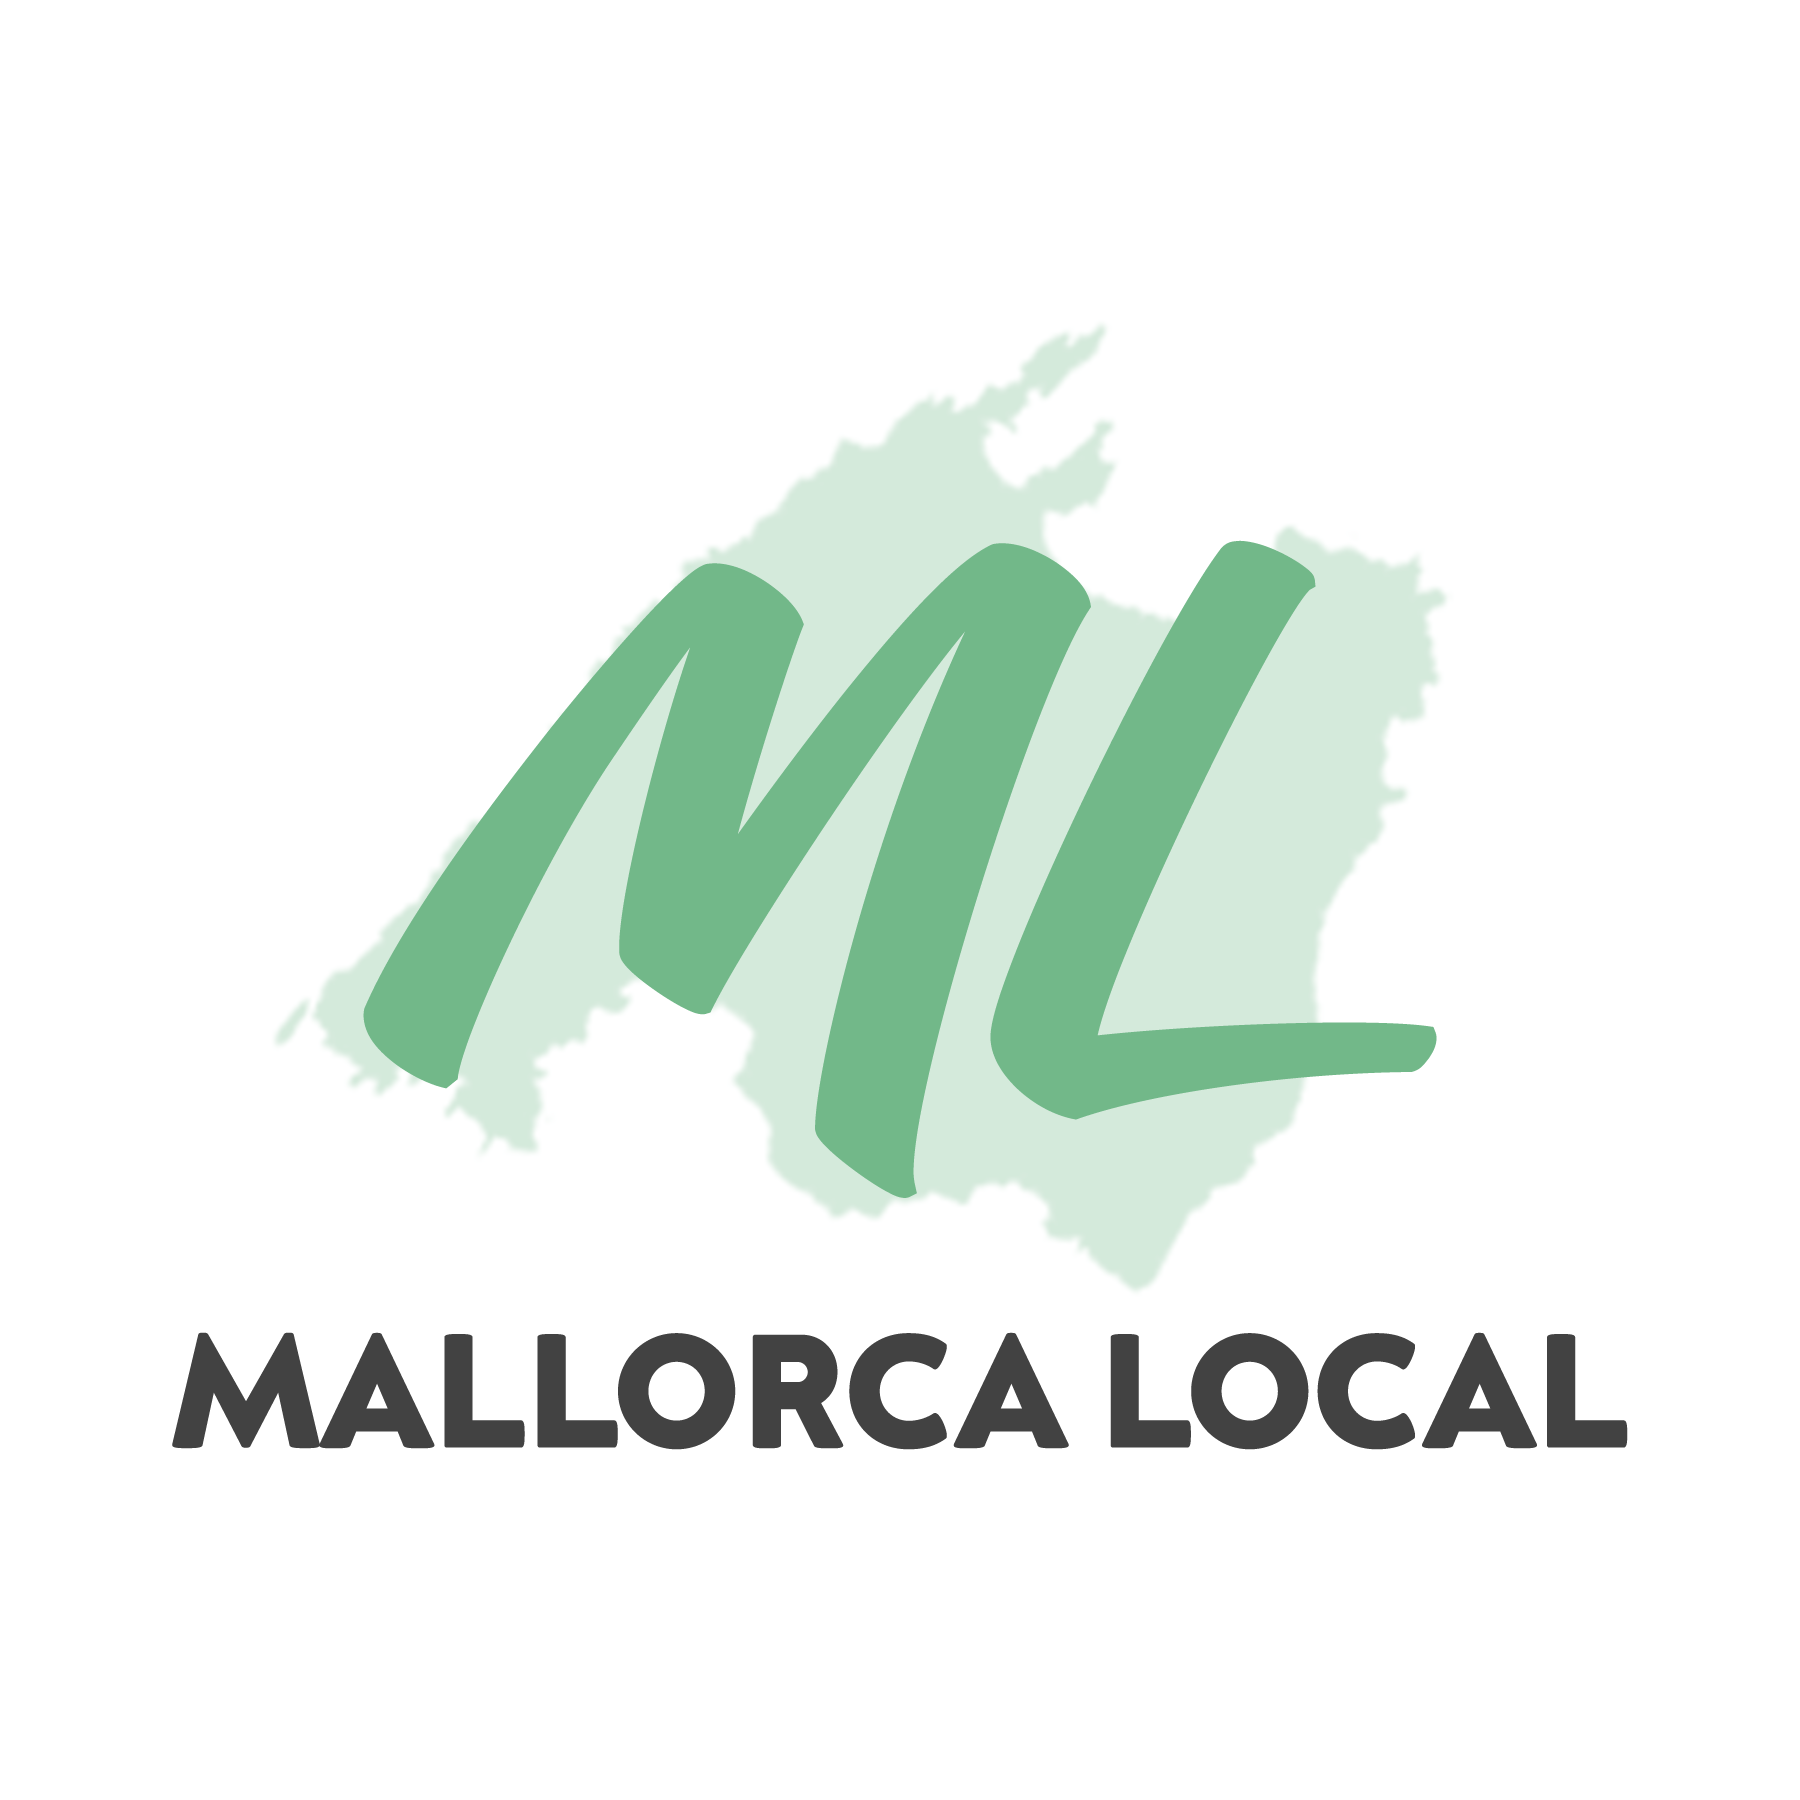 MallorcaLocal logo